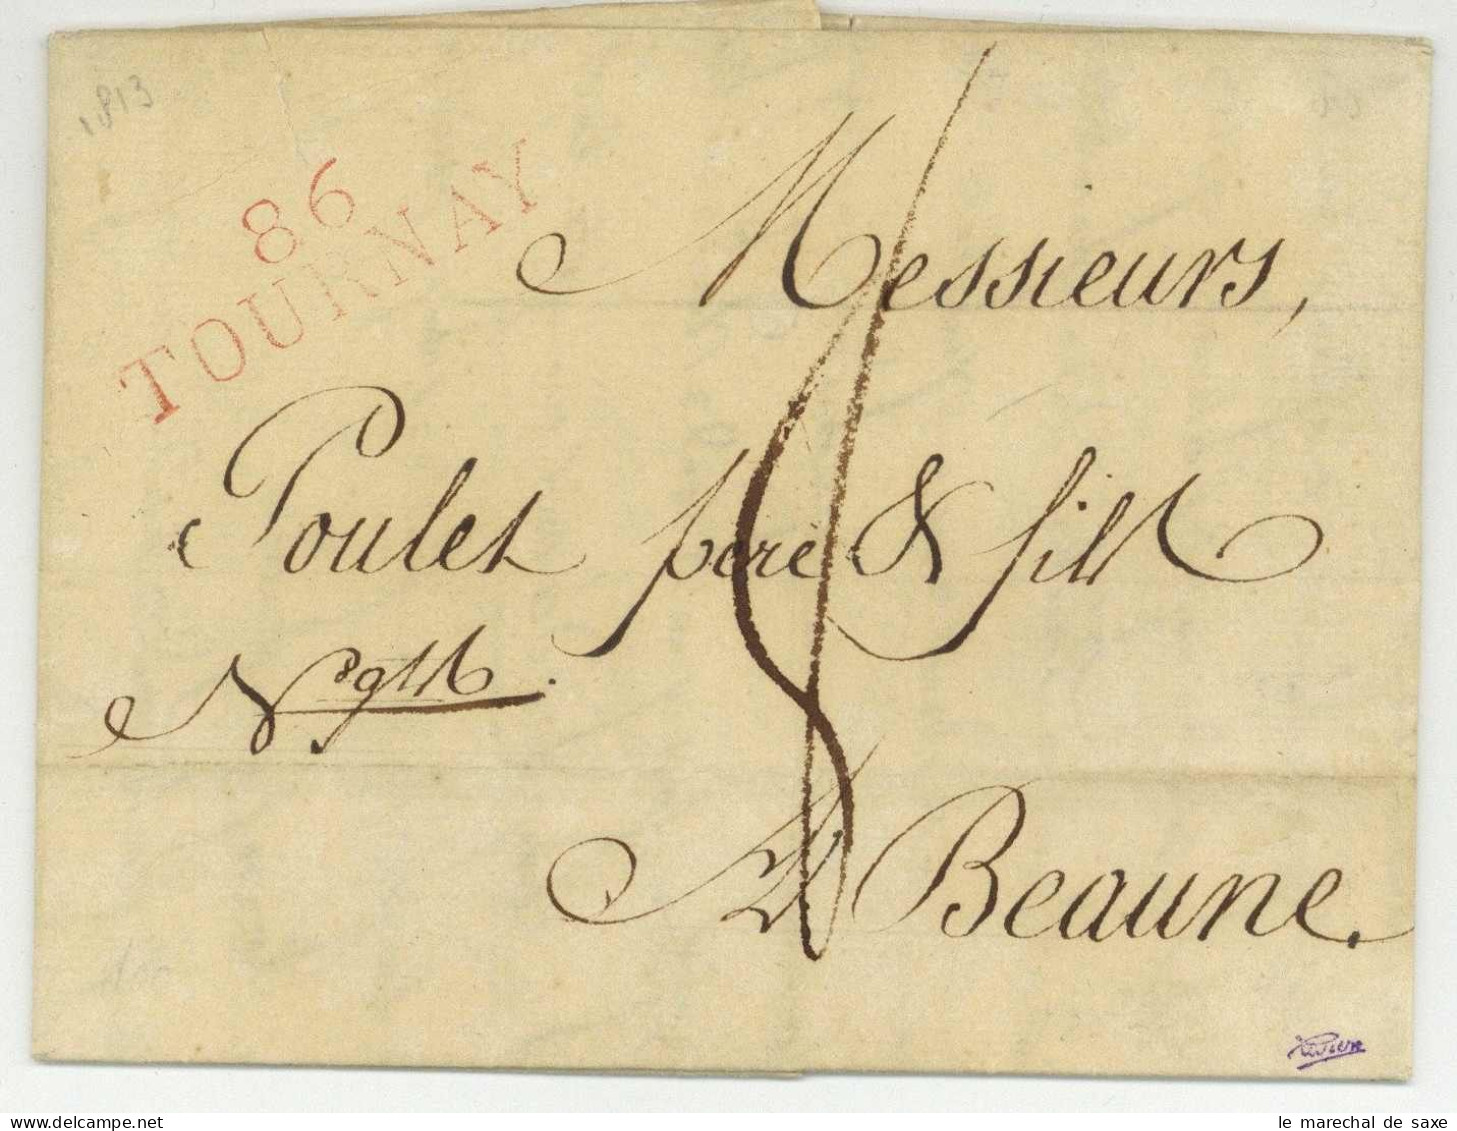 86 TOURNAY Pour Beaune 1813 - 1792-1815: Départements Conquis